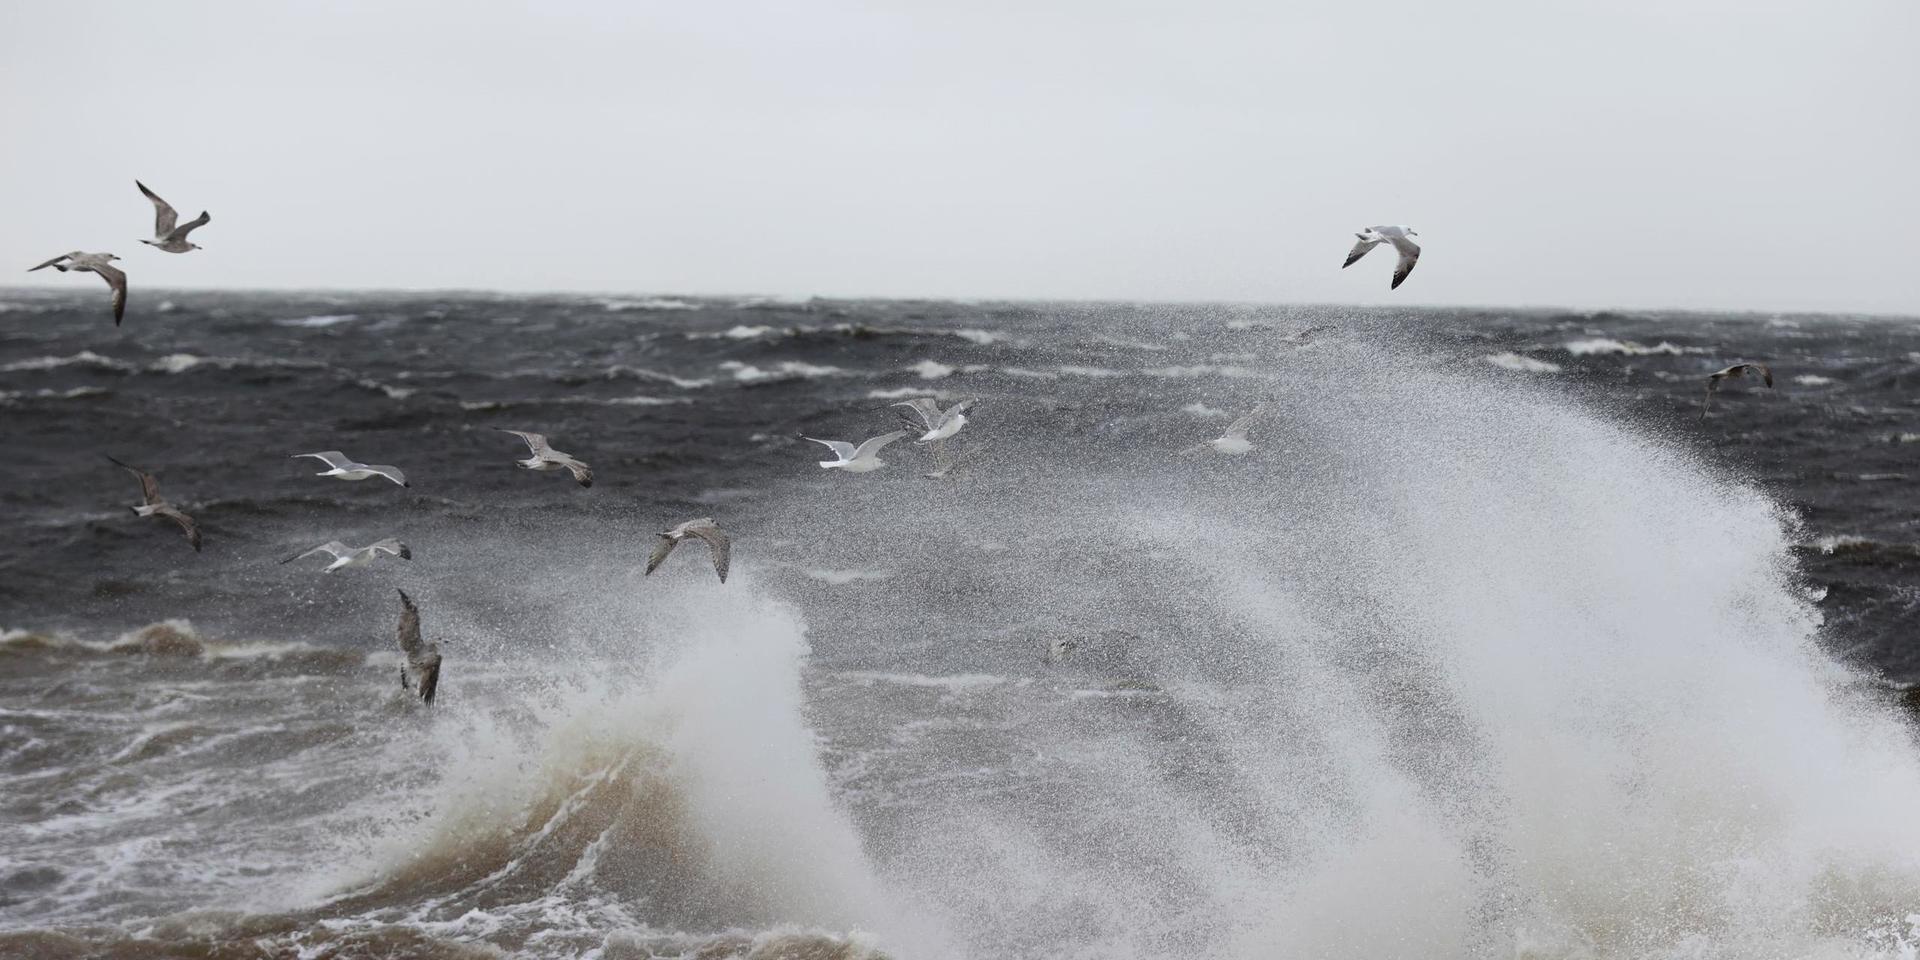 En storm i Finland orsakar hårda vindbyar i Sverige, men under torsdagseftermiddagen väntas det blåsa mindre. Arkivbild.